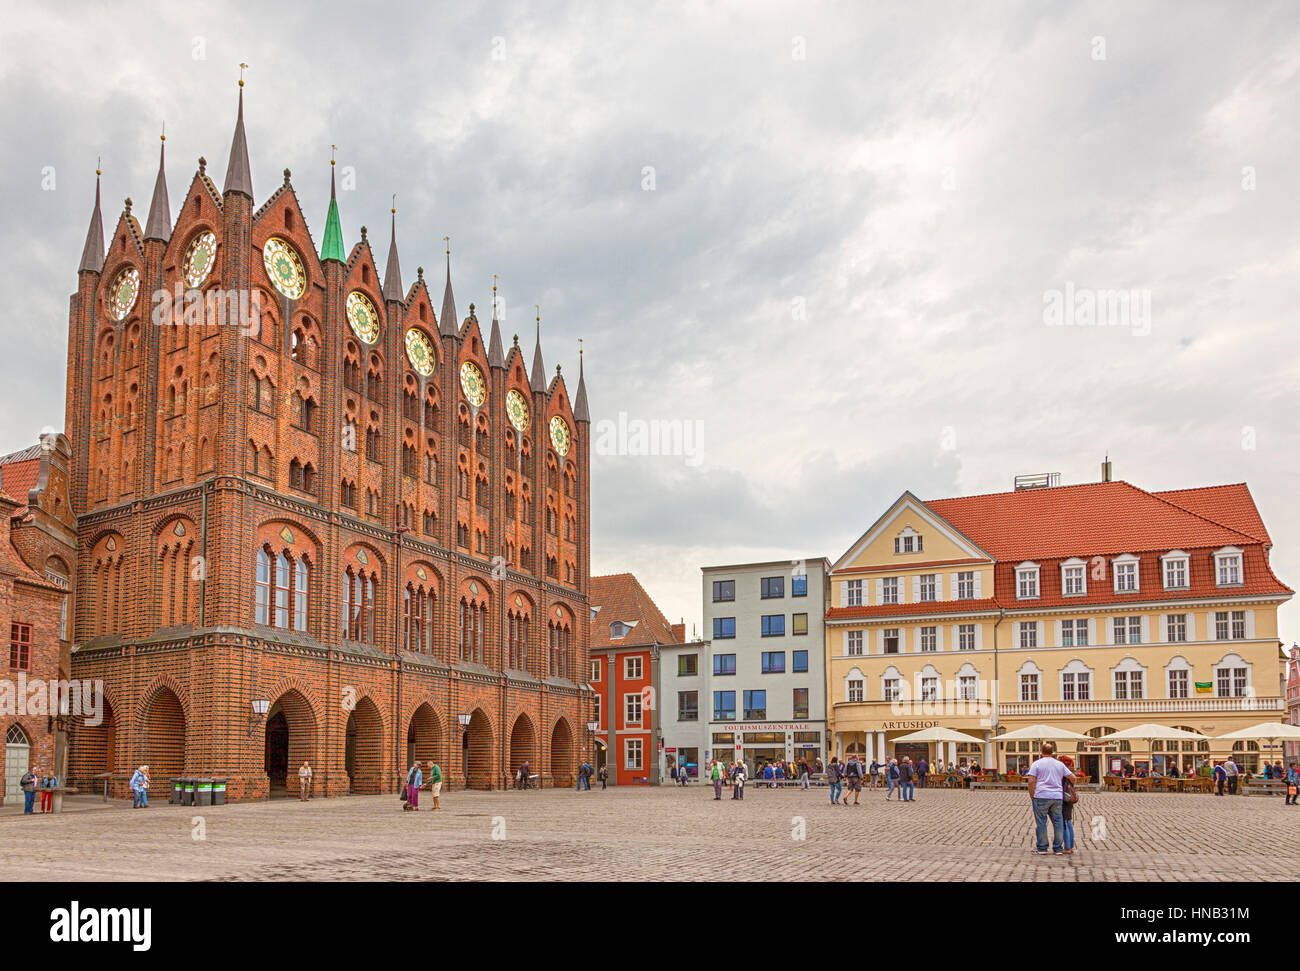 Stralsund, Allemagne - 23 septembre 2016 : Alter Markt, la place centrale de Stralsund avec l'hôtel de ville gothique. Banque D'Images